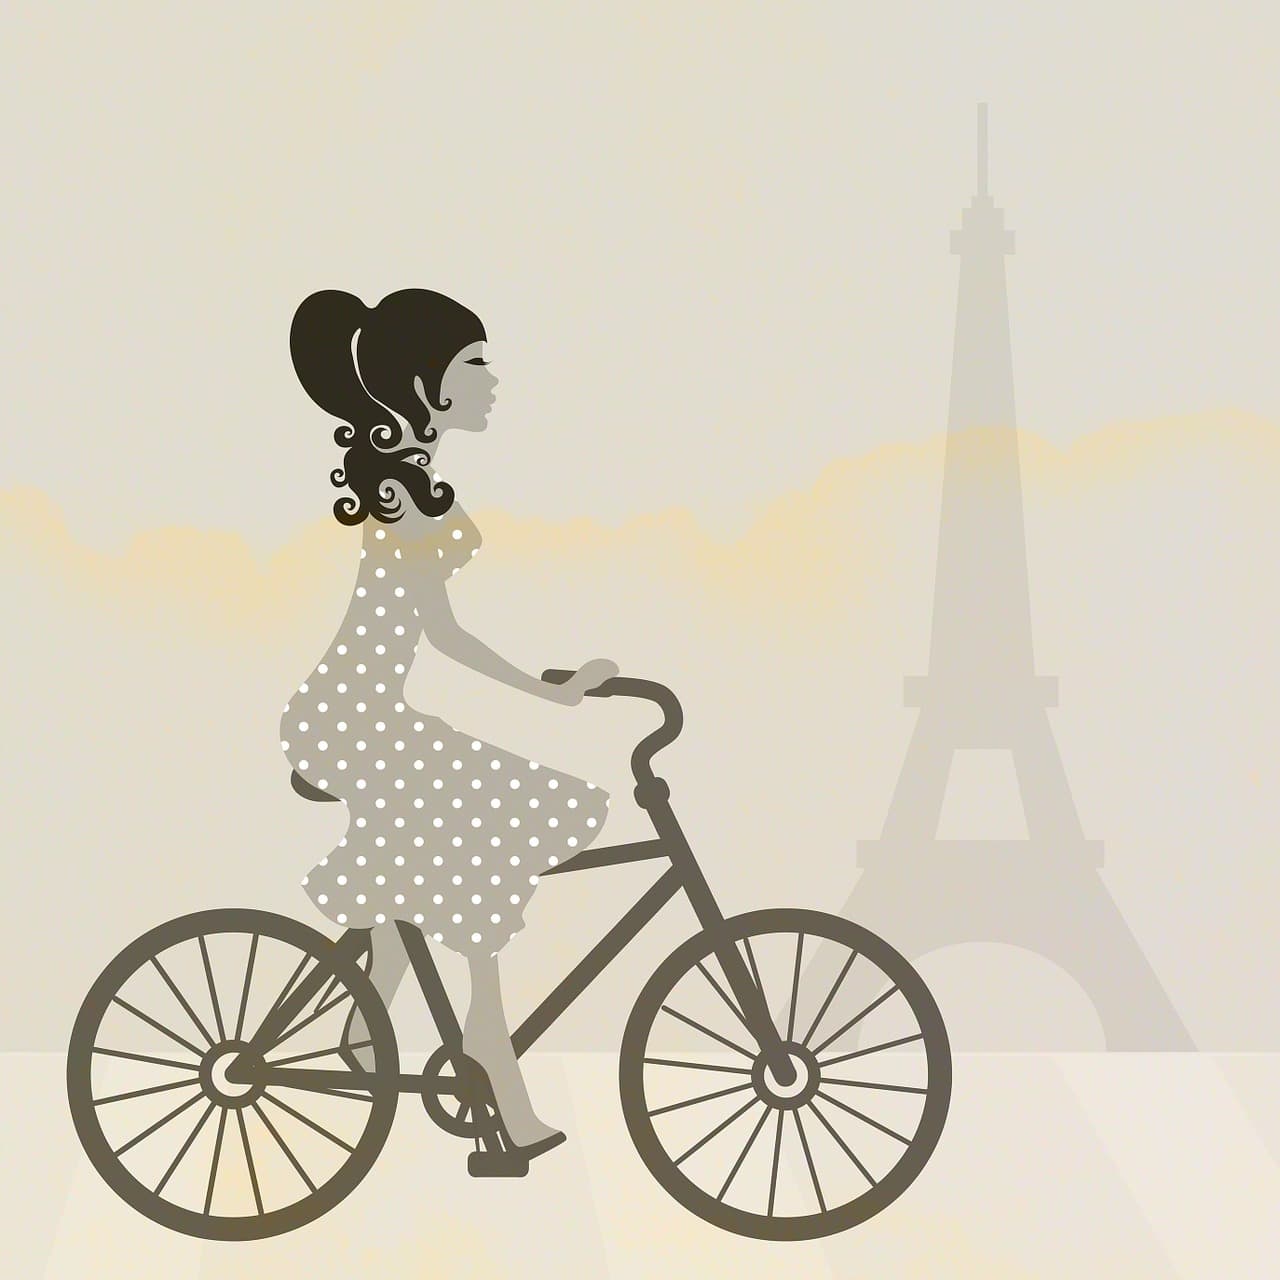 パリエッフェル塔と自転車に乗る女性のイラスト